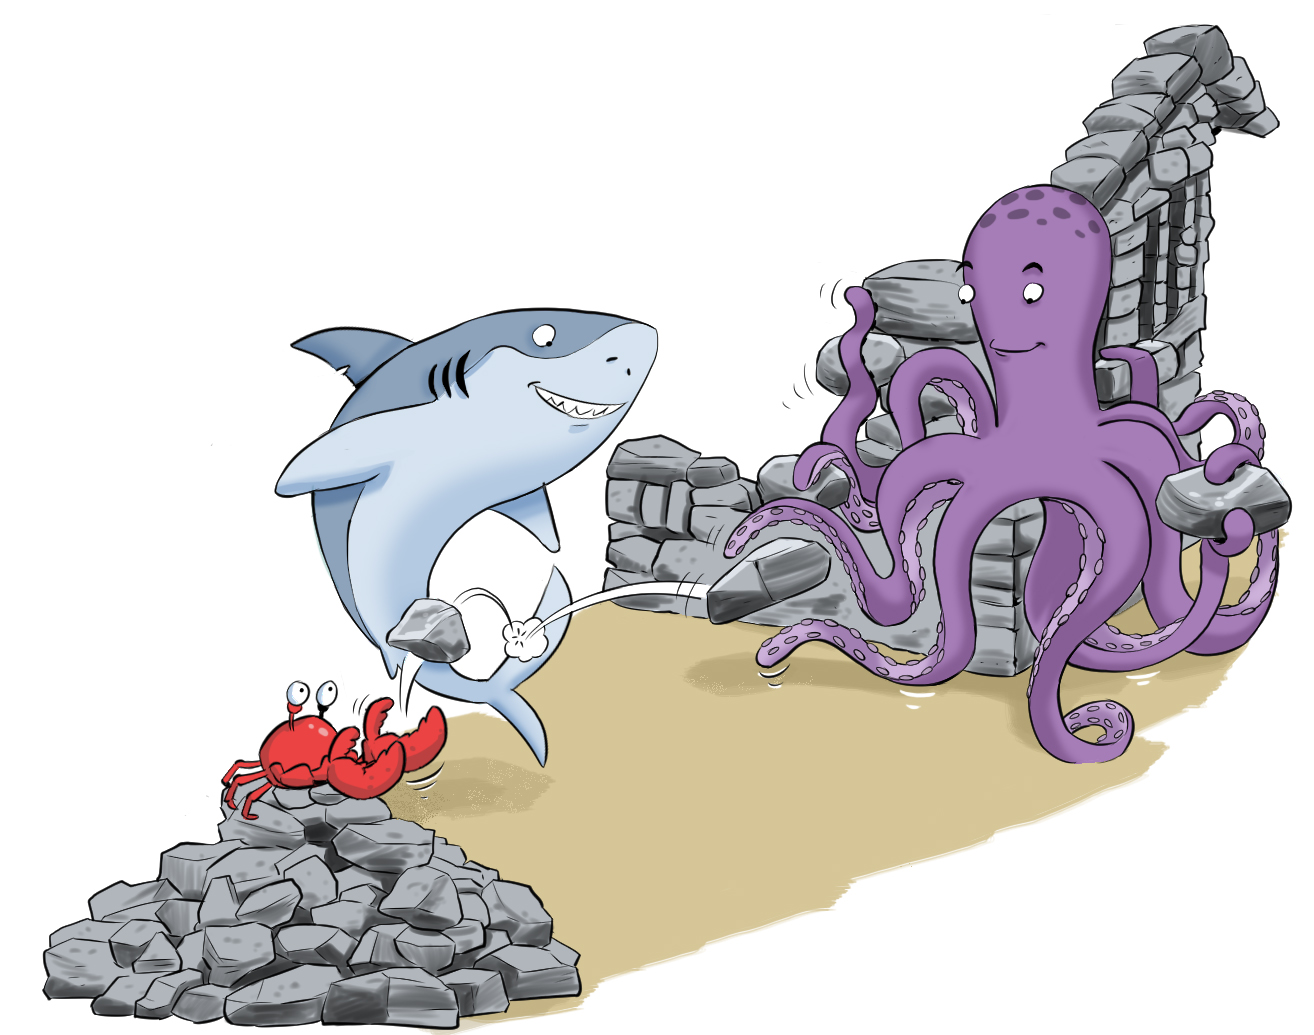 Un homard lance une pierre au requin qui la relance ensuite à la pieuvre pour construire en équipe un abri en pierres.